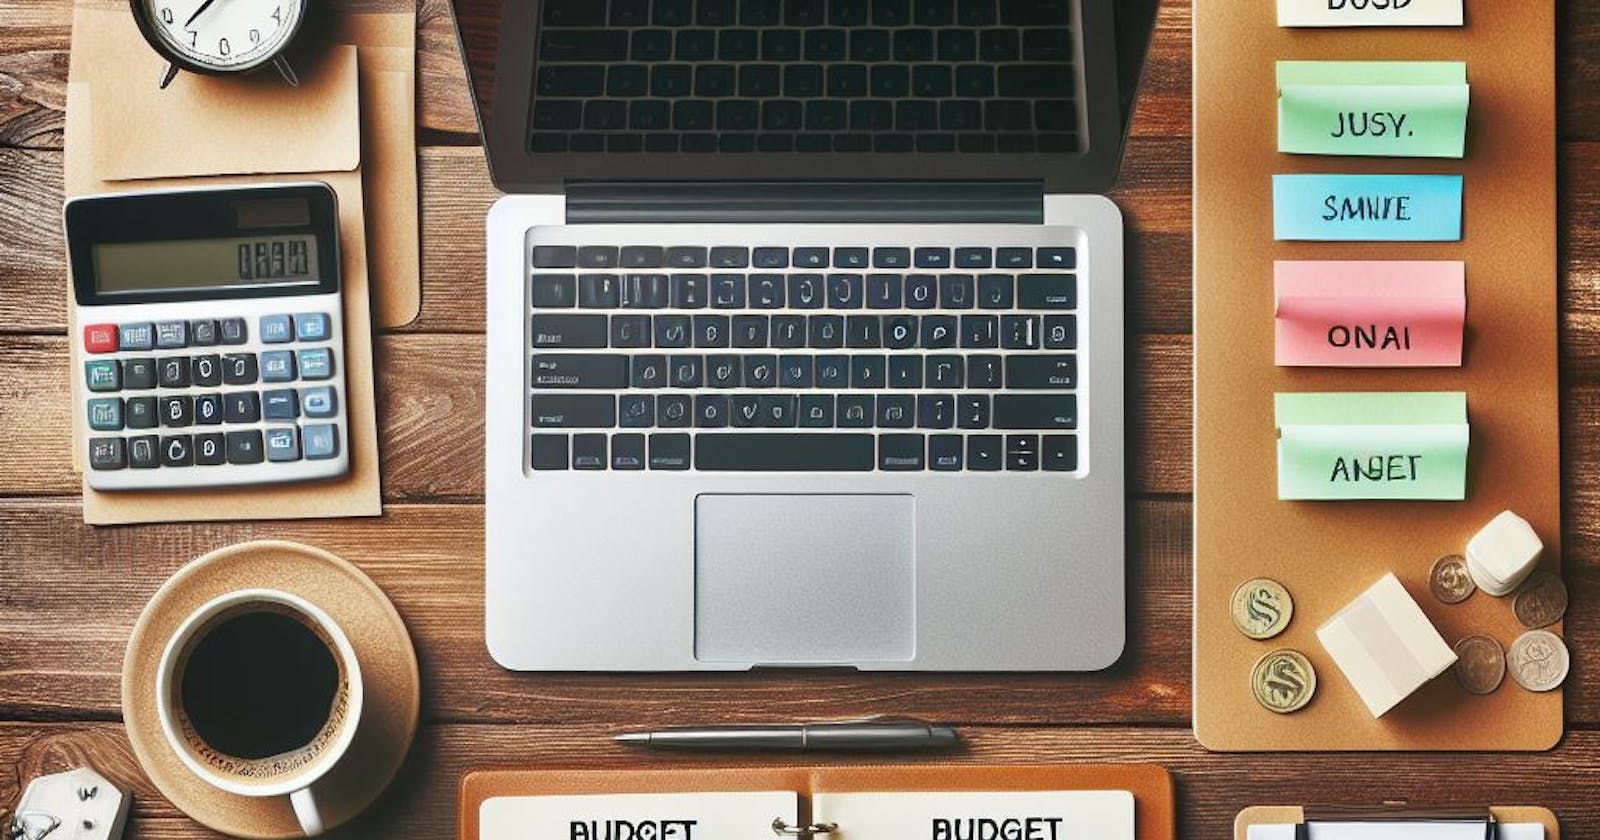 Ferramentas para criar e gerenciar orçamentos: domine suas finanças com eficiência